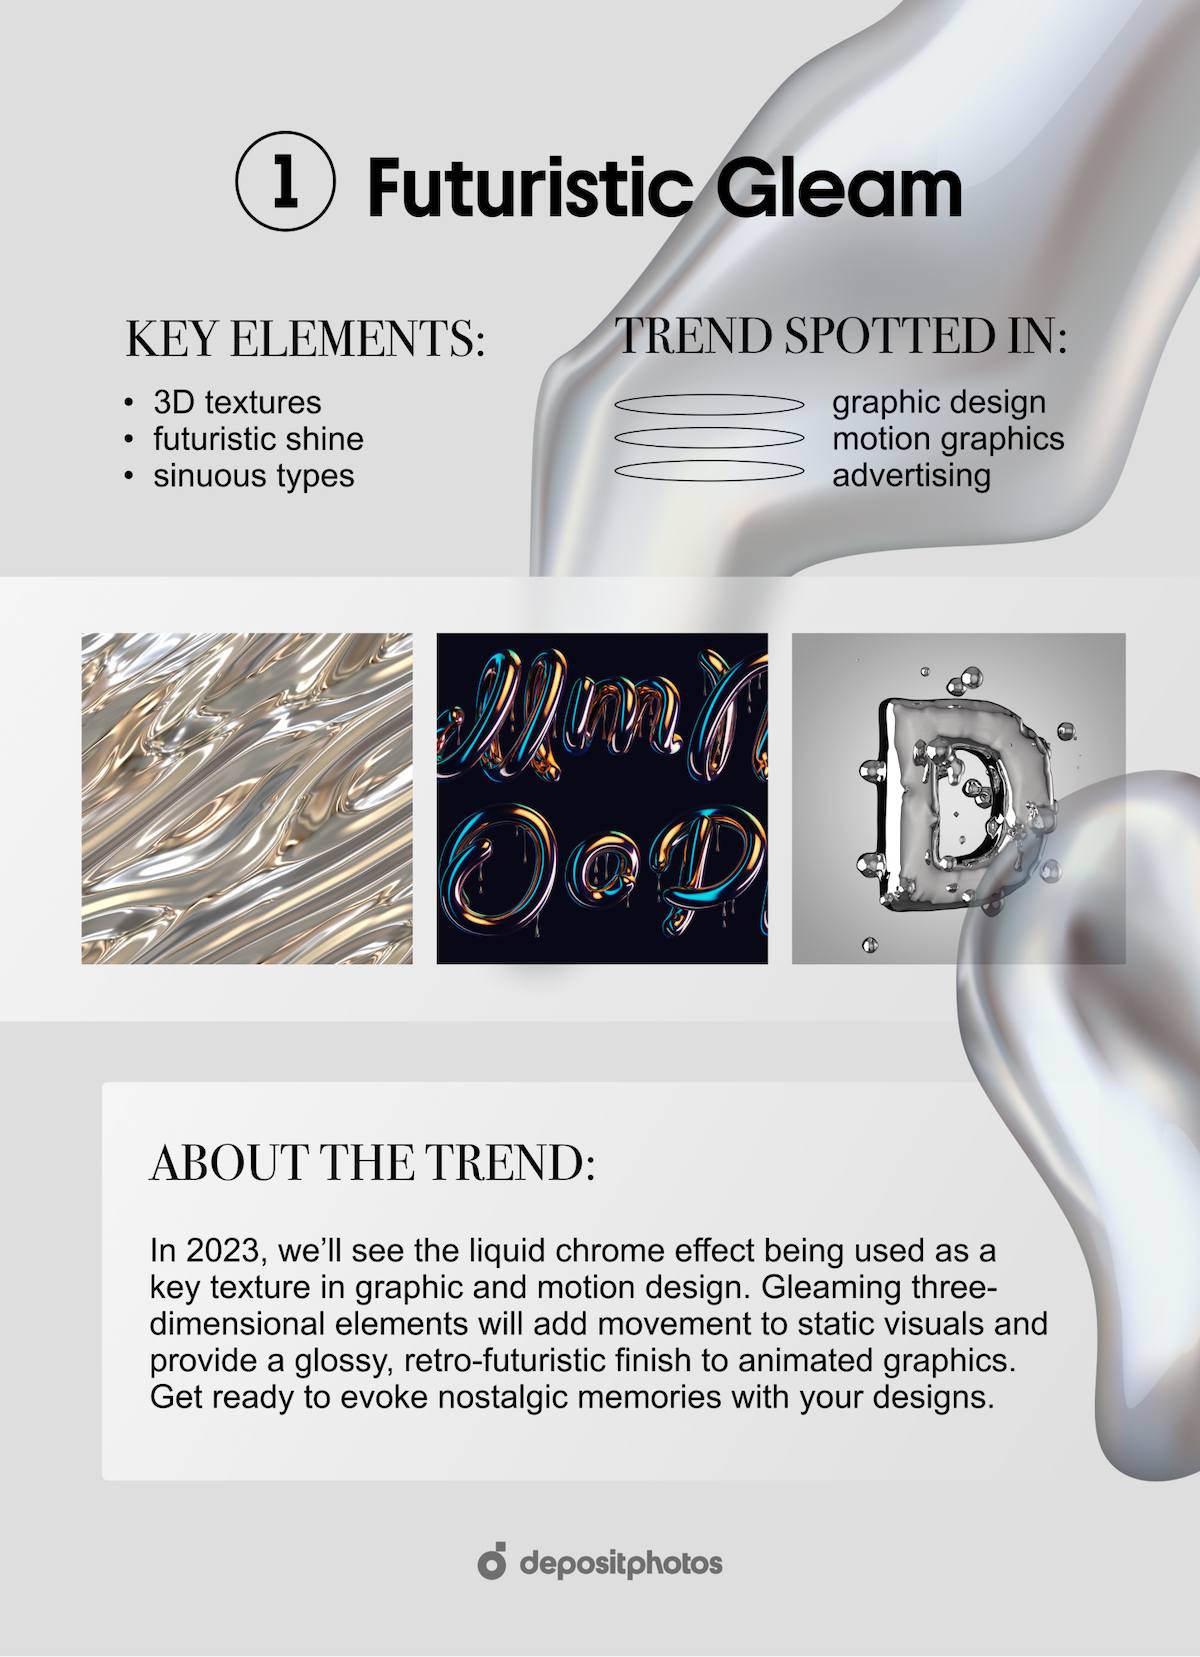 2023 Graphic Design Trends - Futuristic Gleam